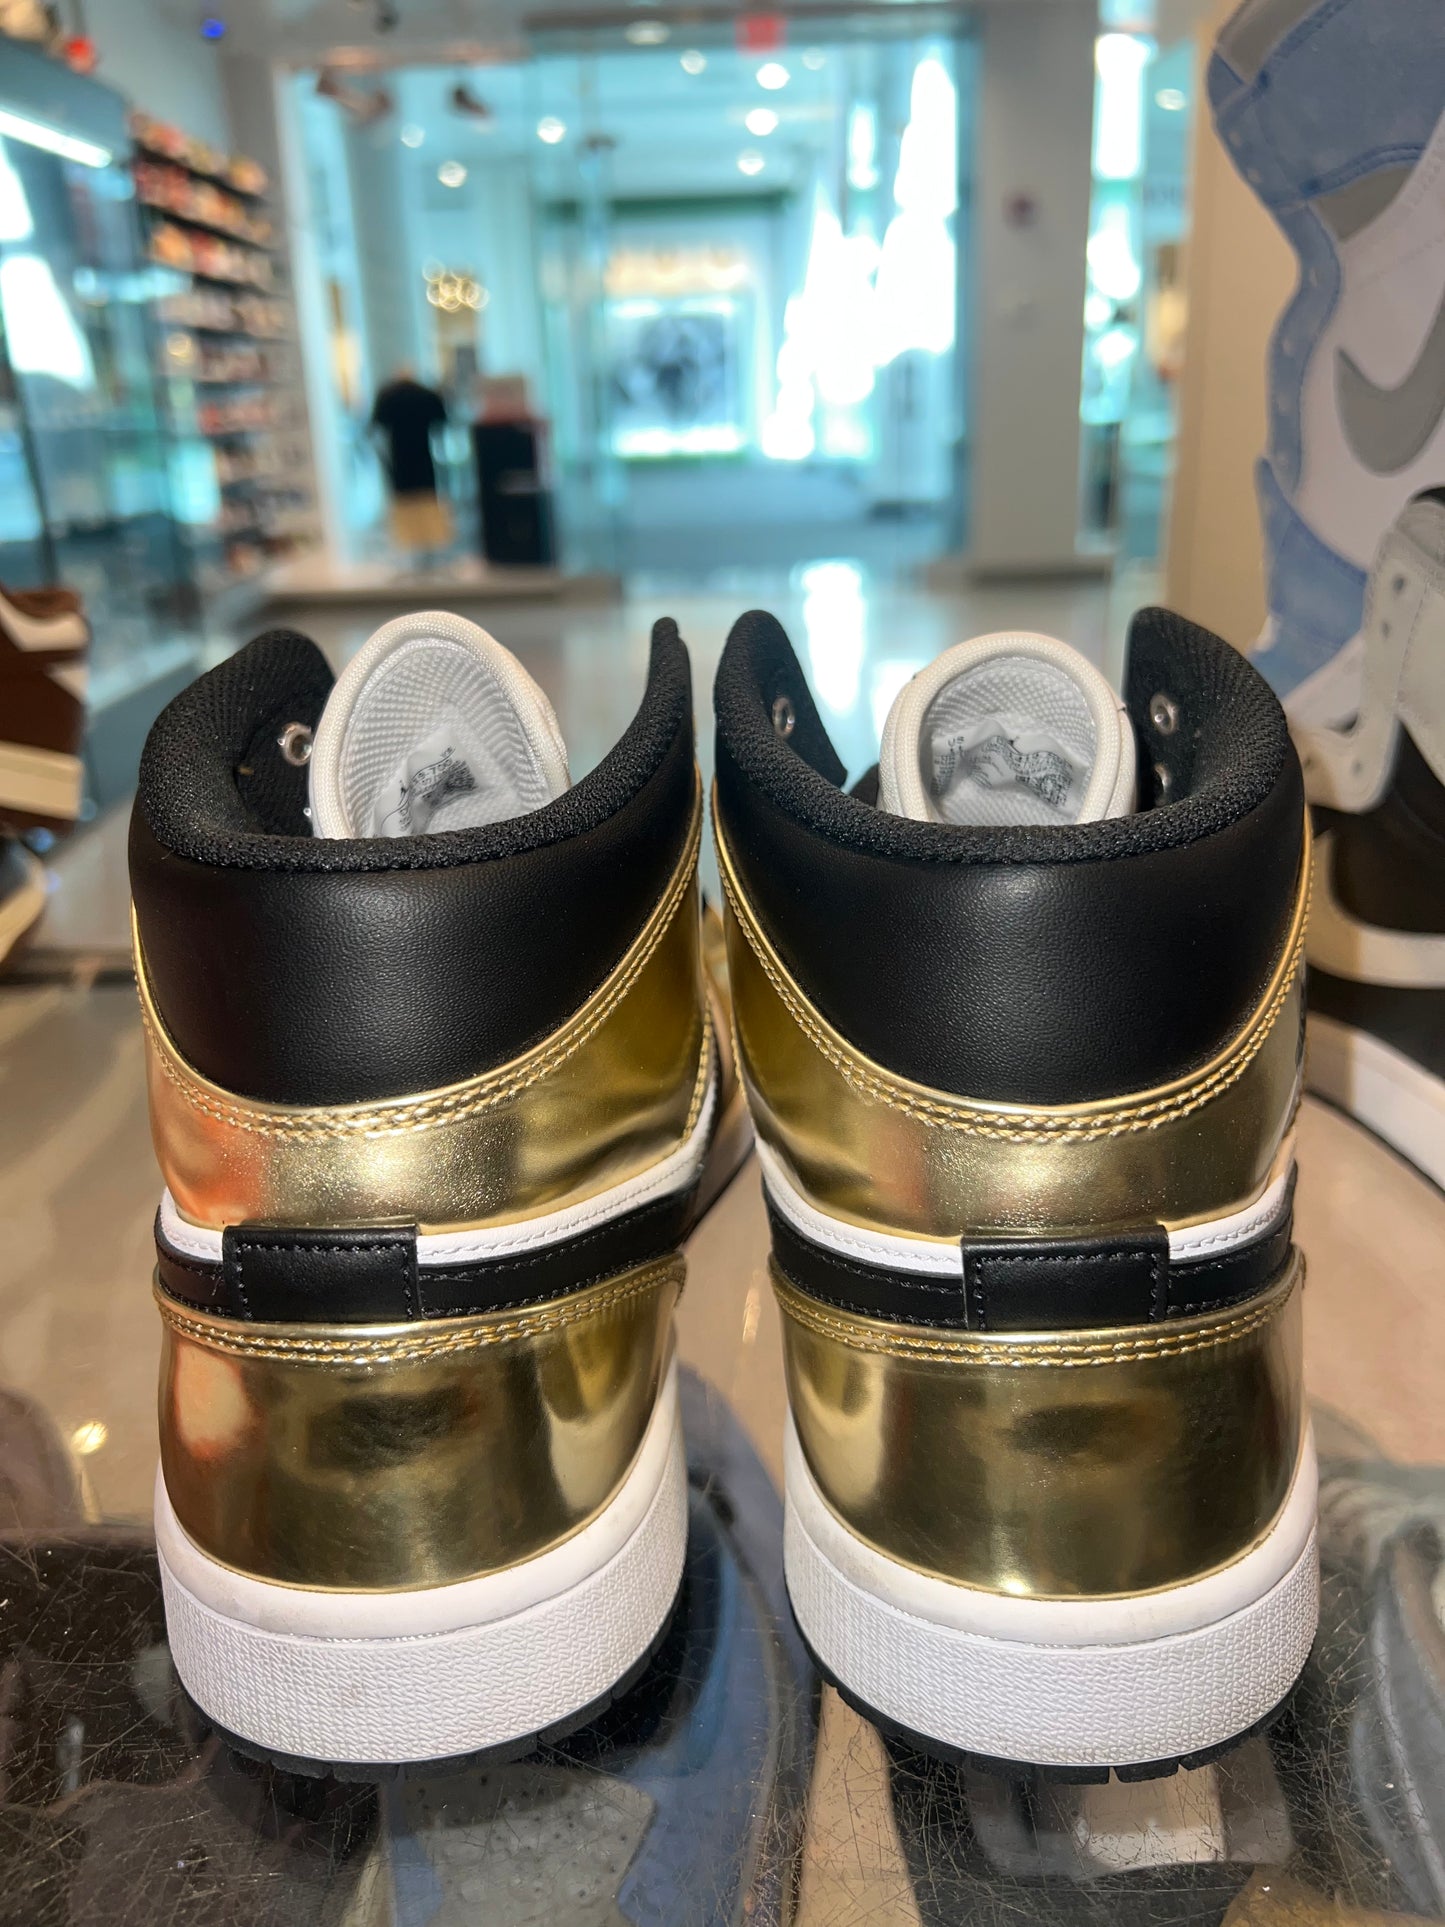 Size 11 Air Jordan 1 Mid “Metallic Gold” Worn 1x (Mall)